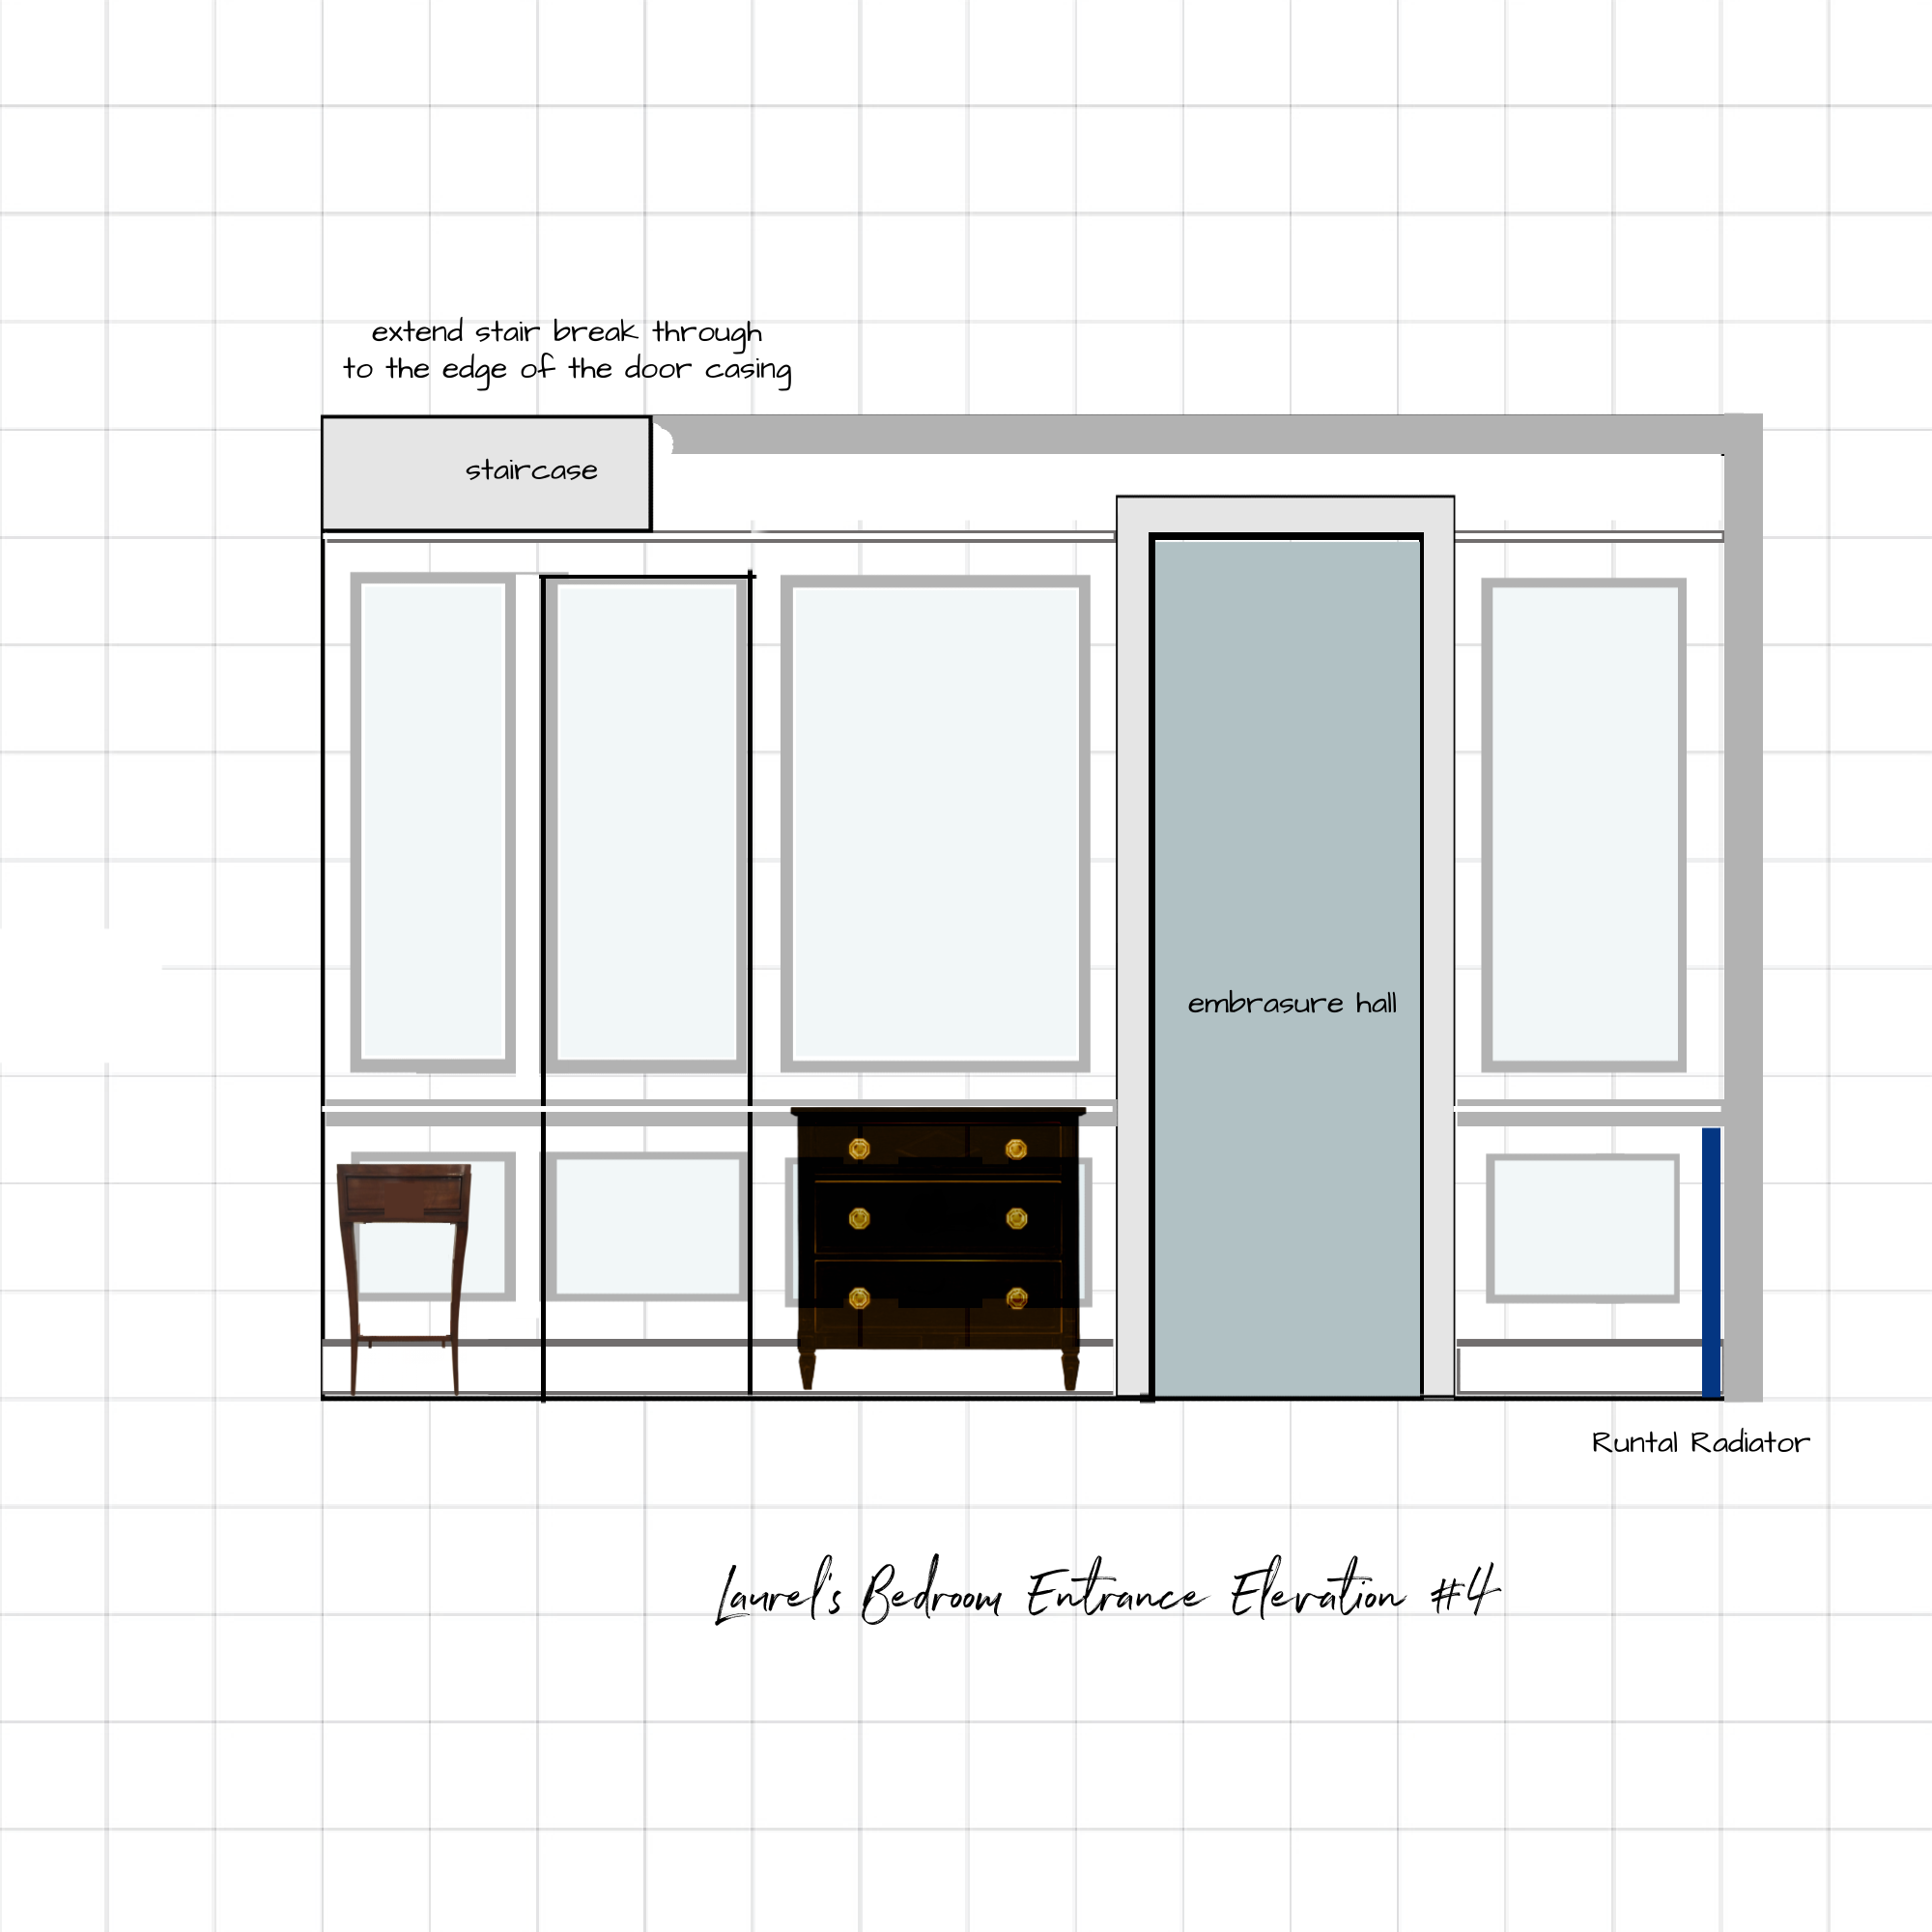 bedroom entrance elevation idea #4